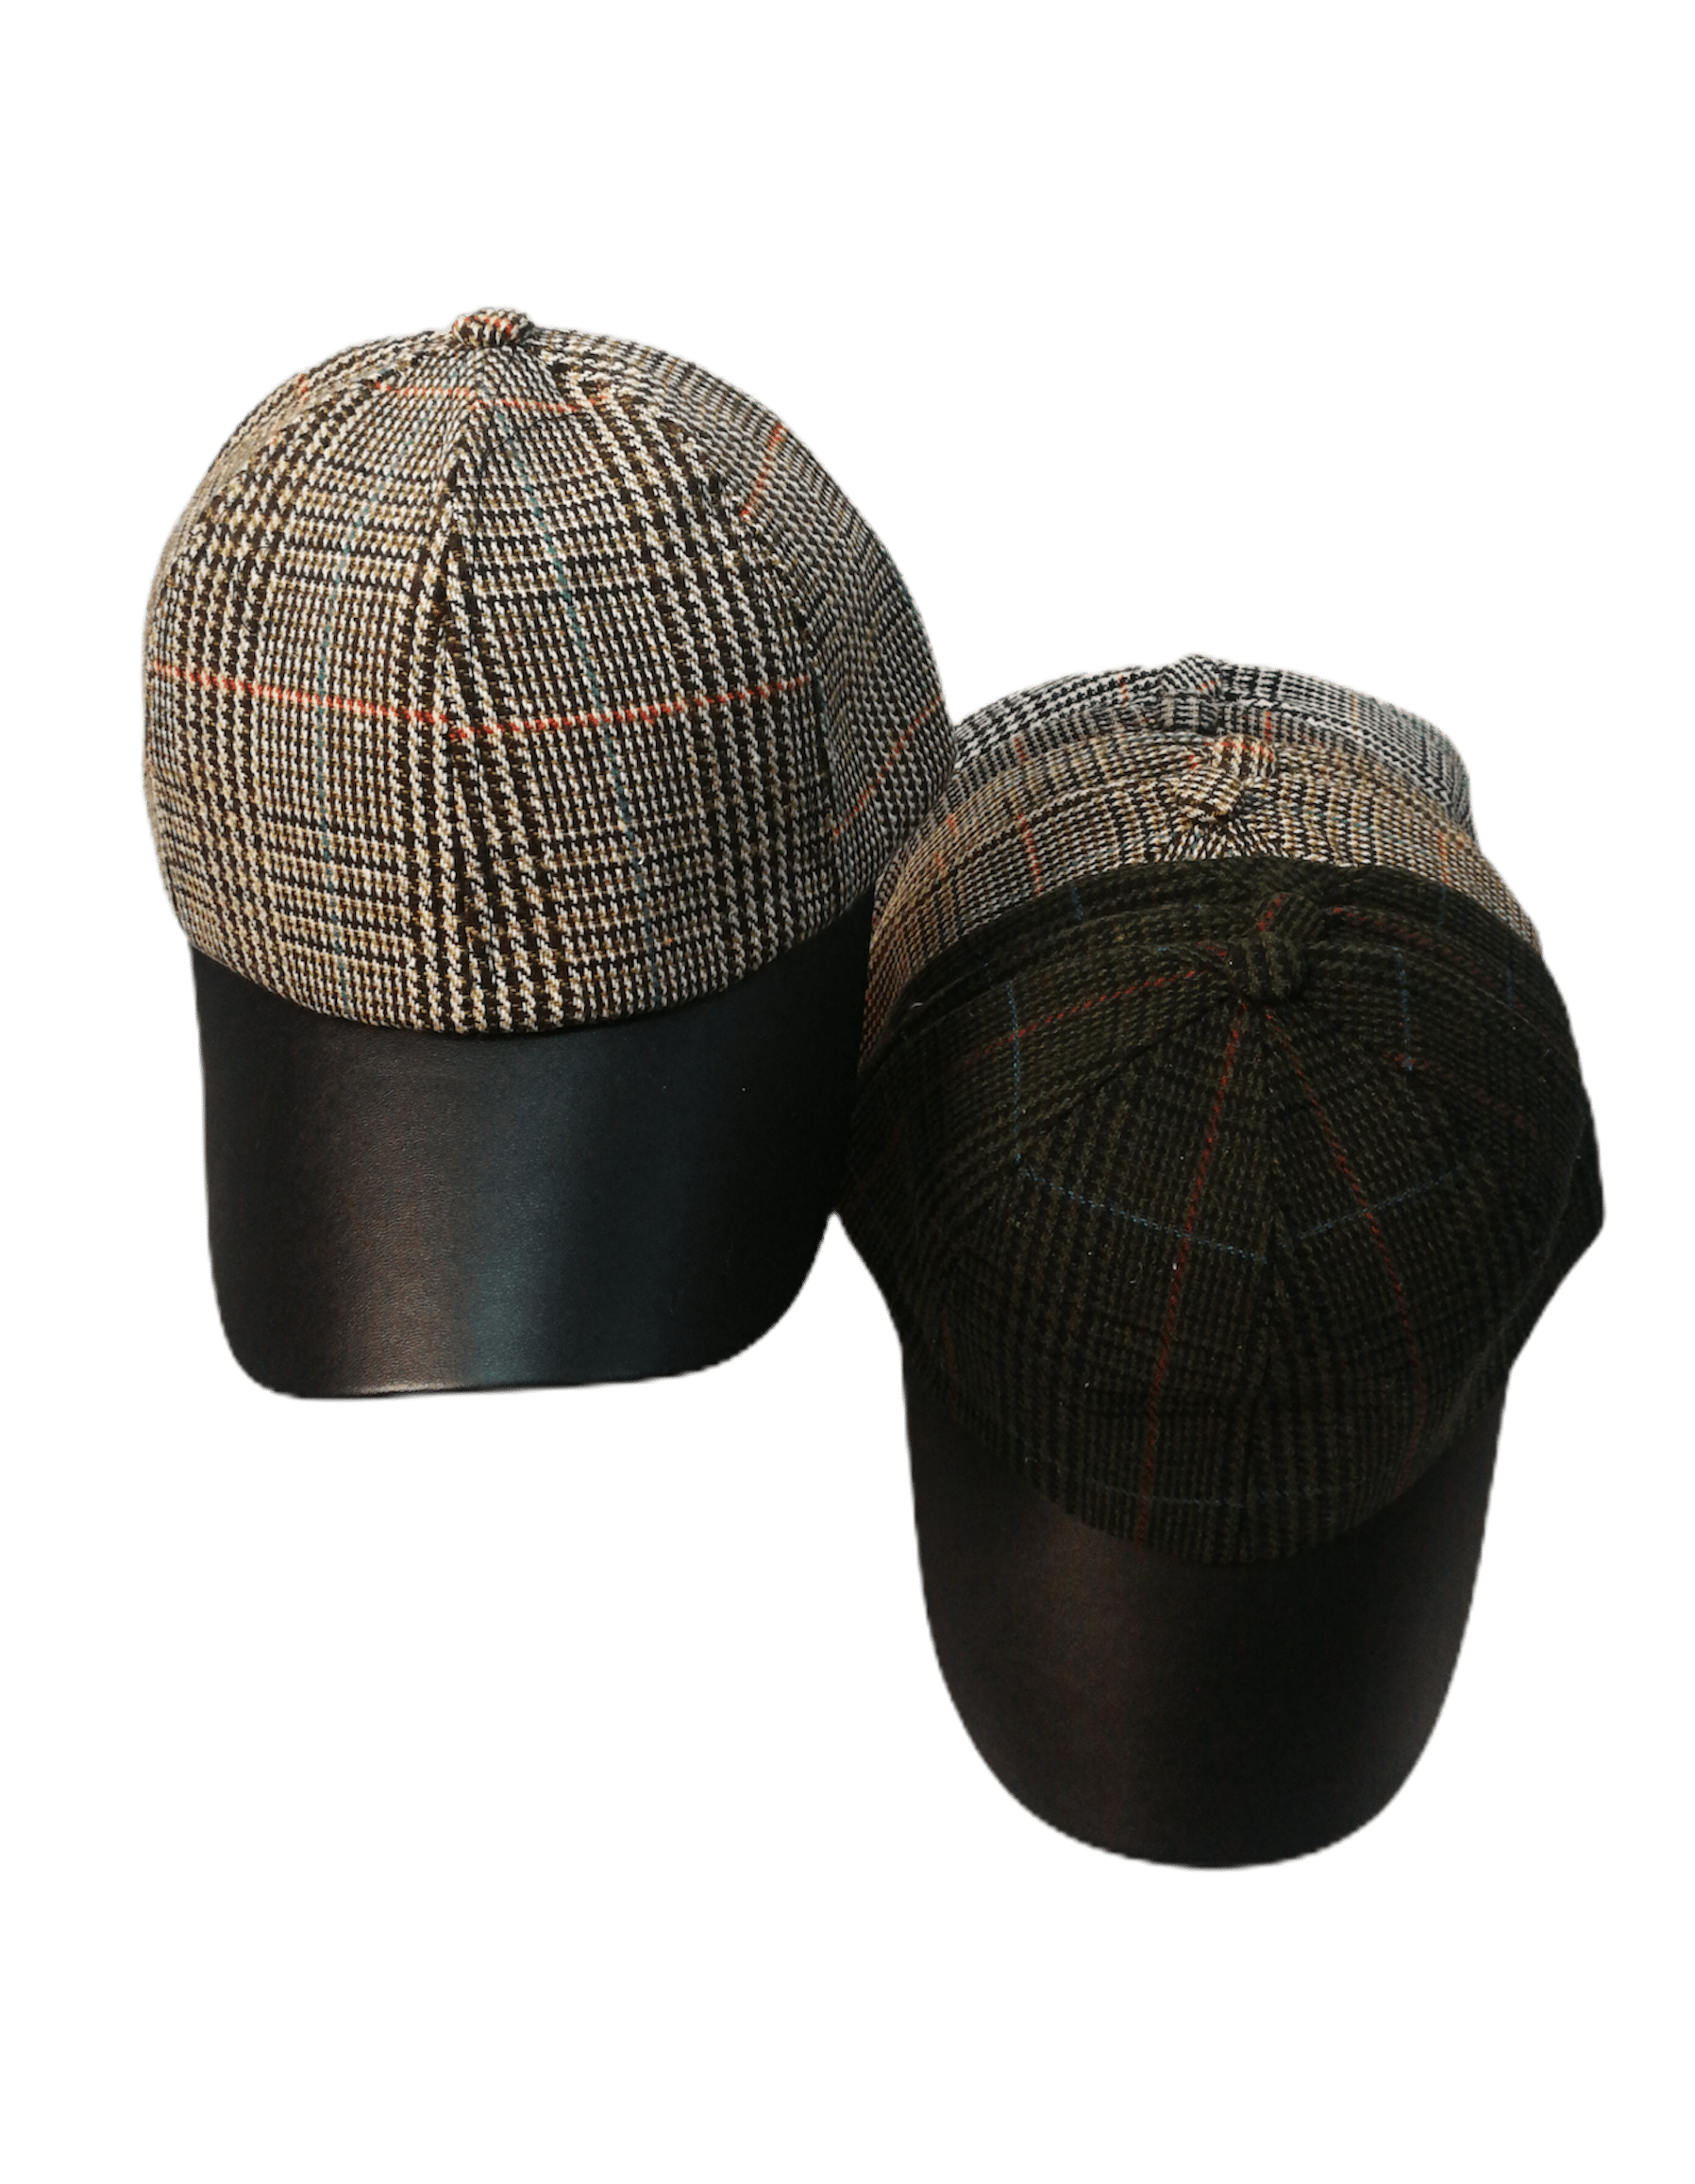 Casquettes similicuir motif tartan   (x12)      2,90€/unité | Grossiste-pro